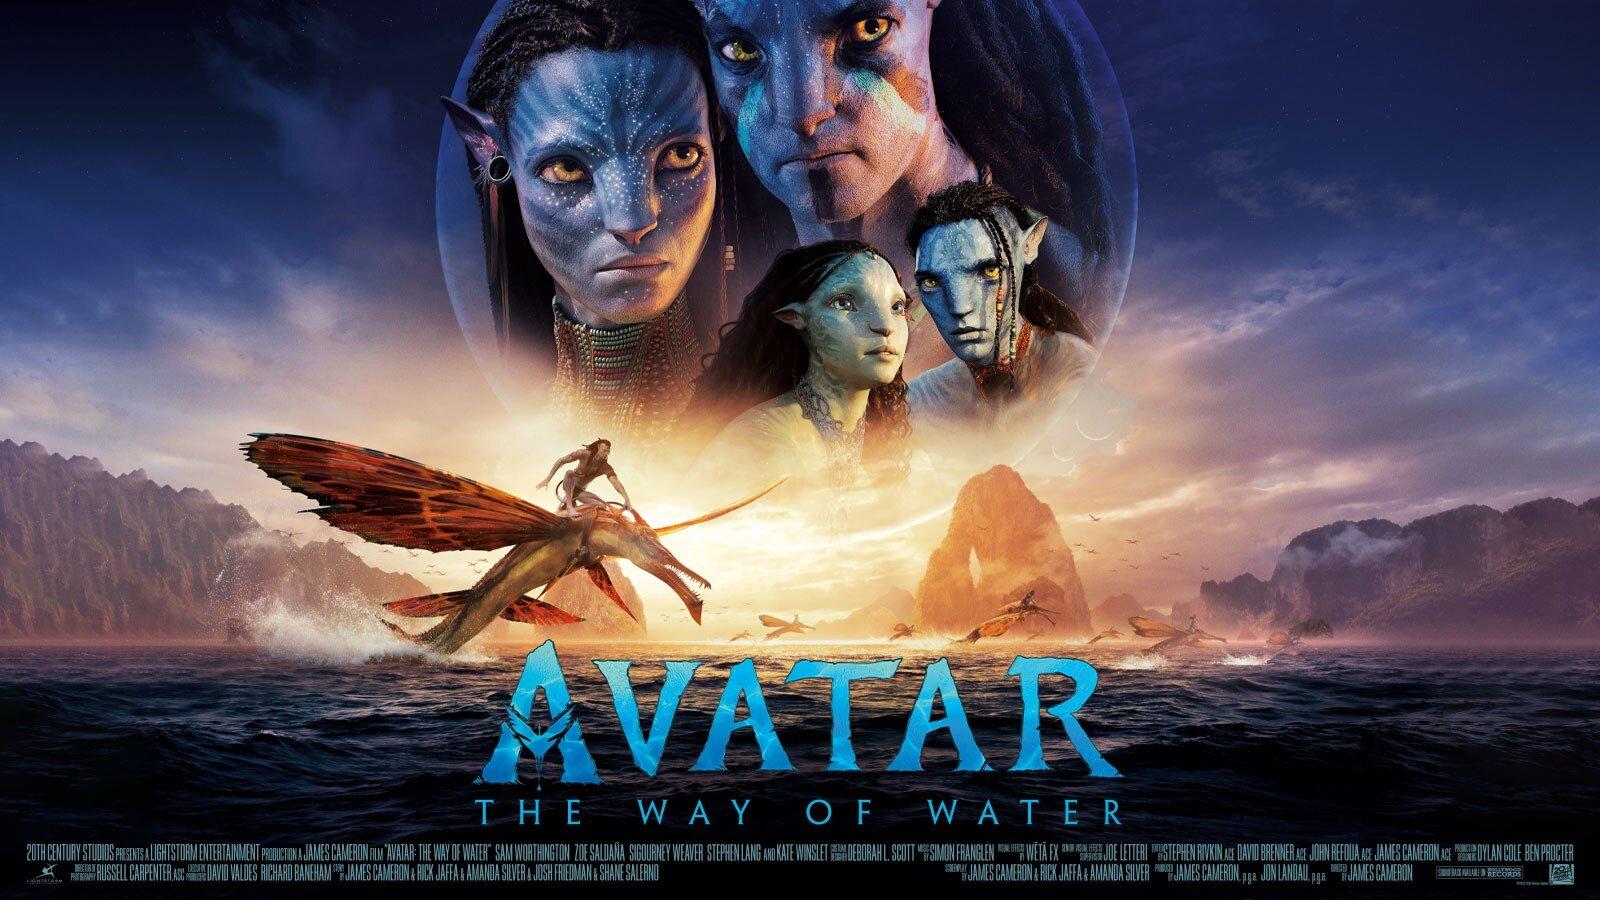 Không chỉ khiến khán giả đắm đuối bởi những cảnh cực kỳ đẹp mắt, bộ phim Avatar phần 2 còn đạt doanh thu ở mức cao nhất trên toàn thế giới. Với câu chuyện hấp dẫn, kỹ xảo đỉnh cao và dàn diễn viên tài năng, Avatar phần 2 không chỉ đáng xem mà còn đáng trải nghiệm. Truy cập hình ảnh để xem những phân đoạn hấp dẫn nhất của bộ phim này.